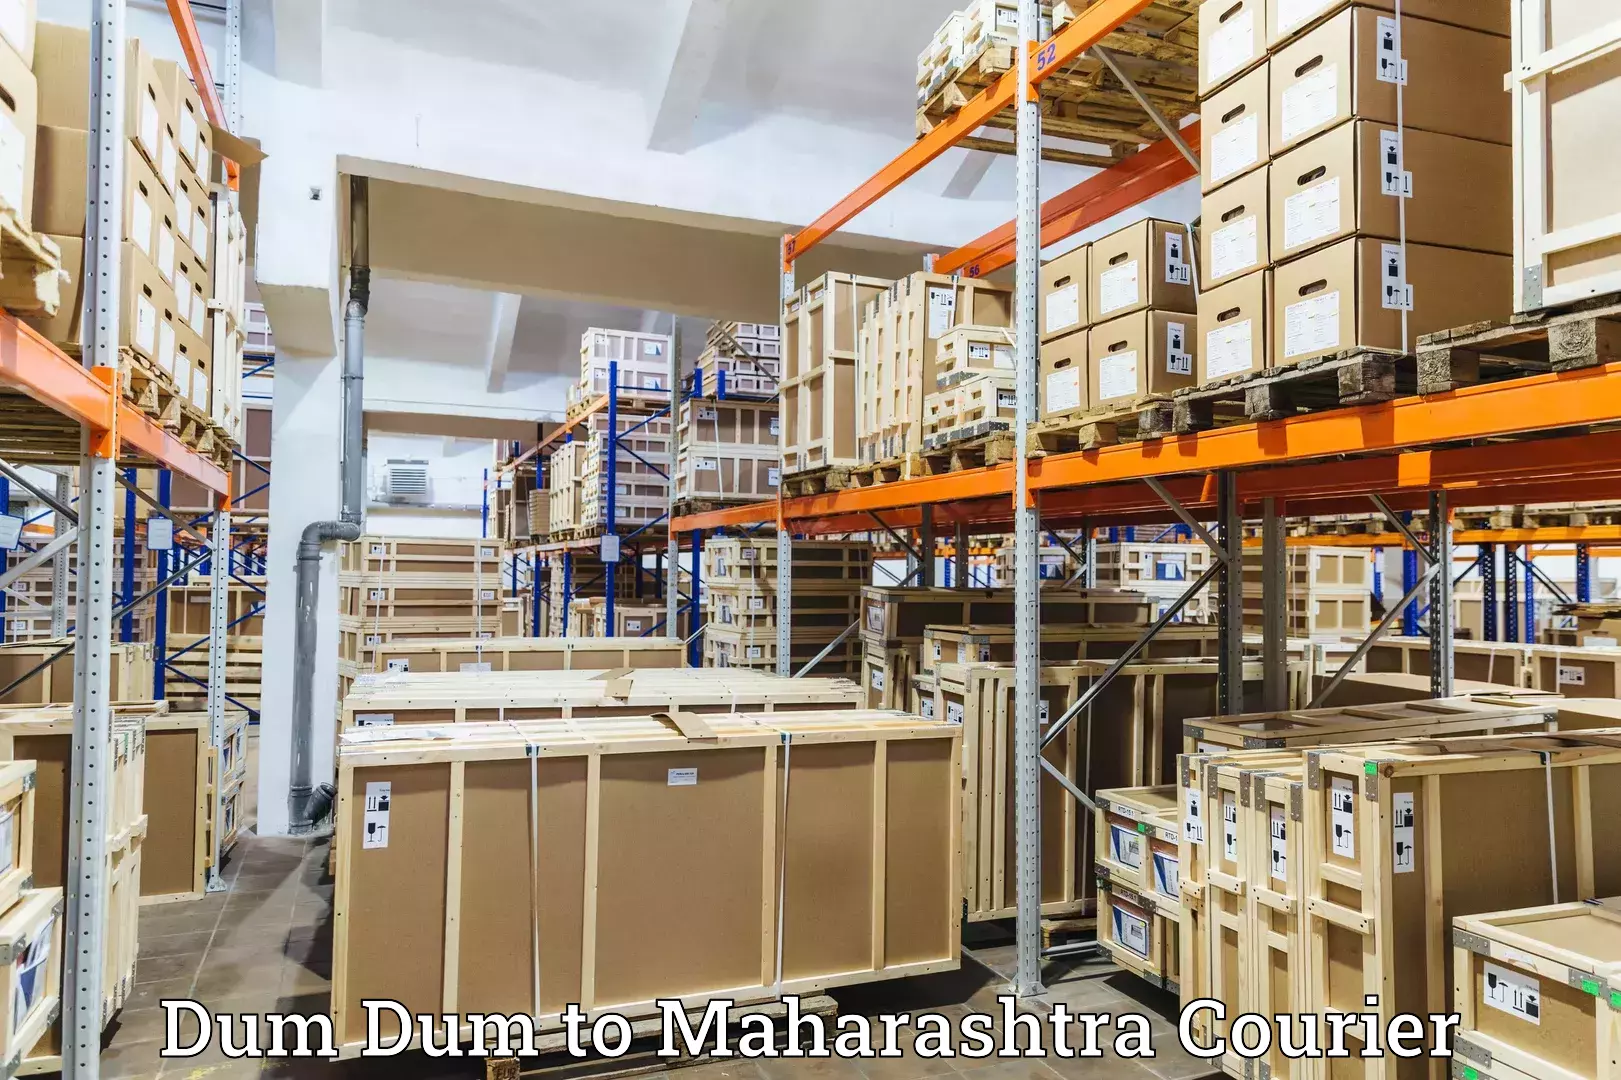 High-priority parcel service Dum Dum to Vaijapur